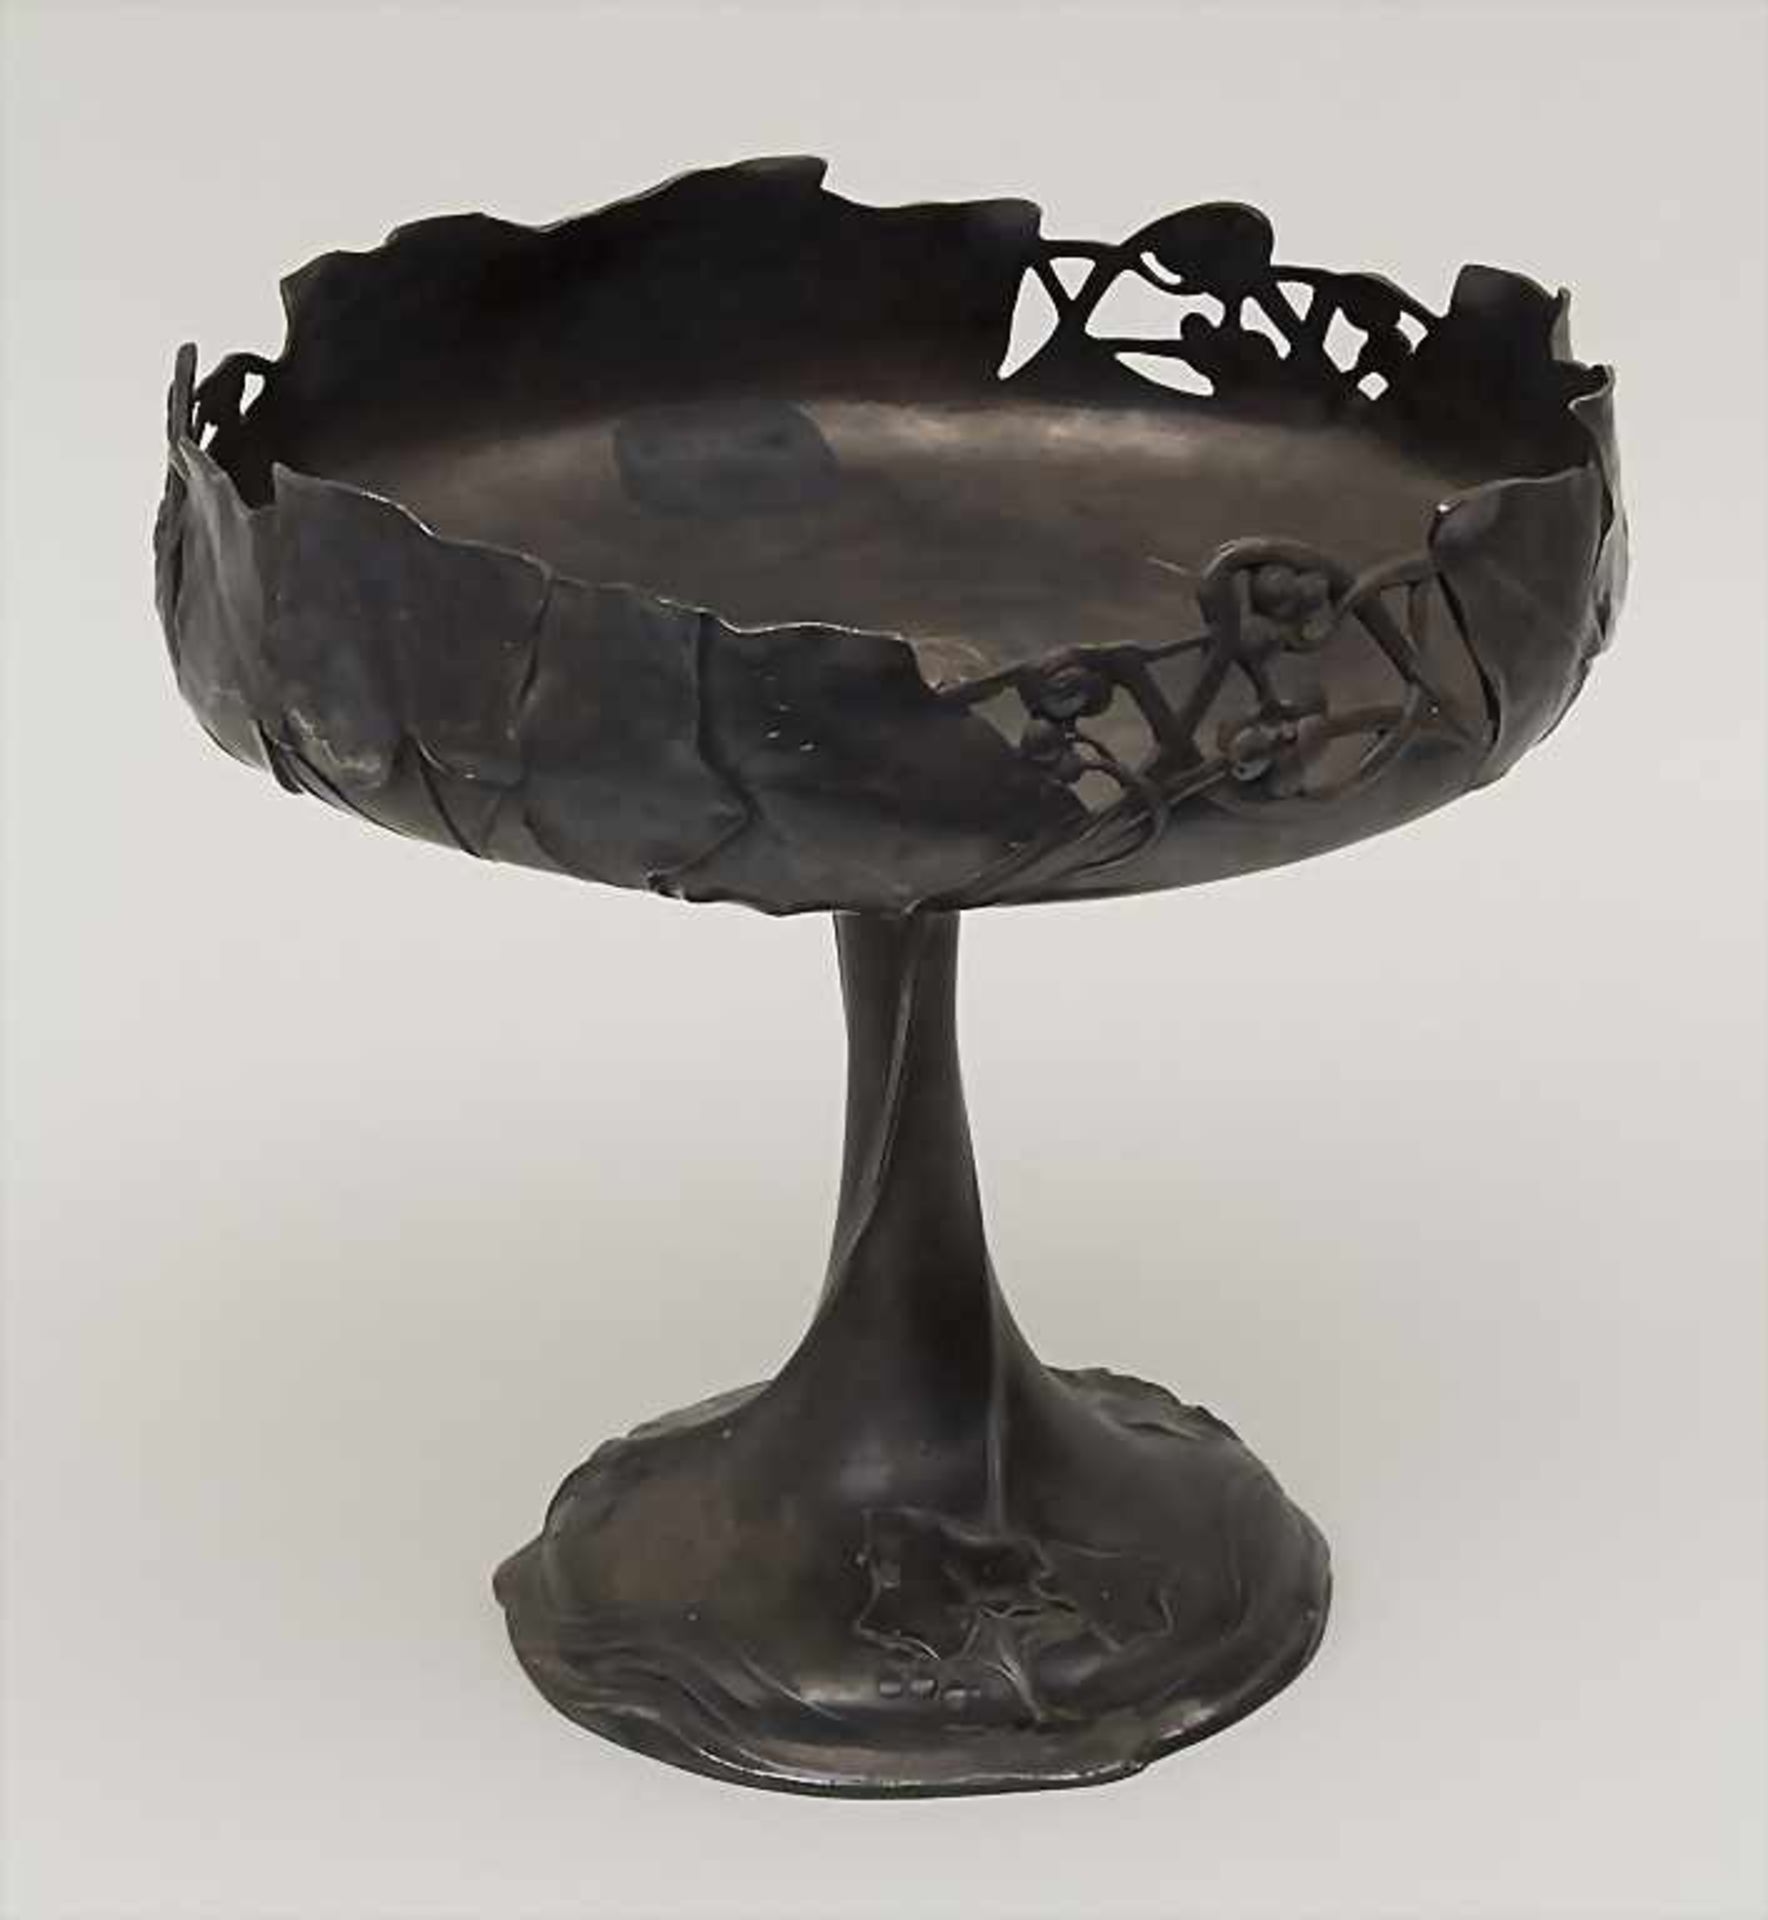 Große Jugendstil Aufsatzschale 'Efeu' / A large Art Nouveau footed bowl 'Ivy', WMF, Geislingen,